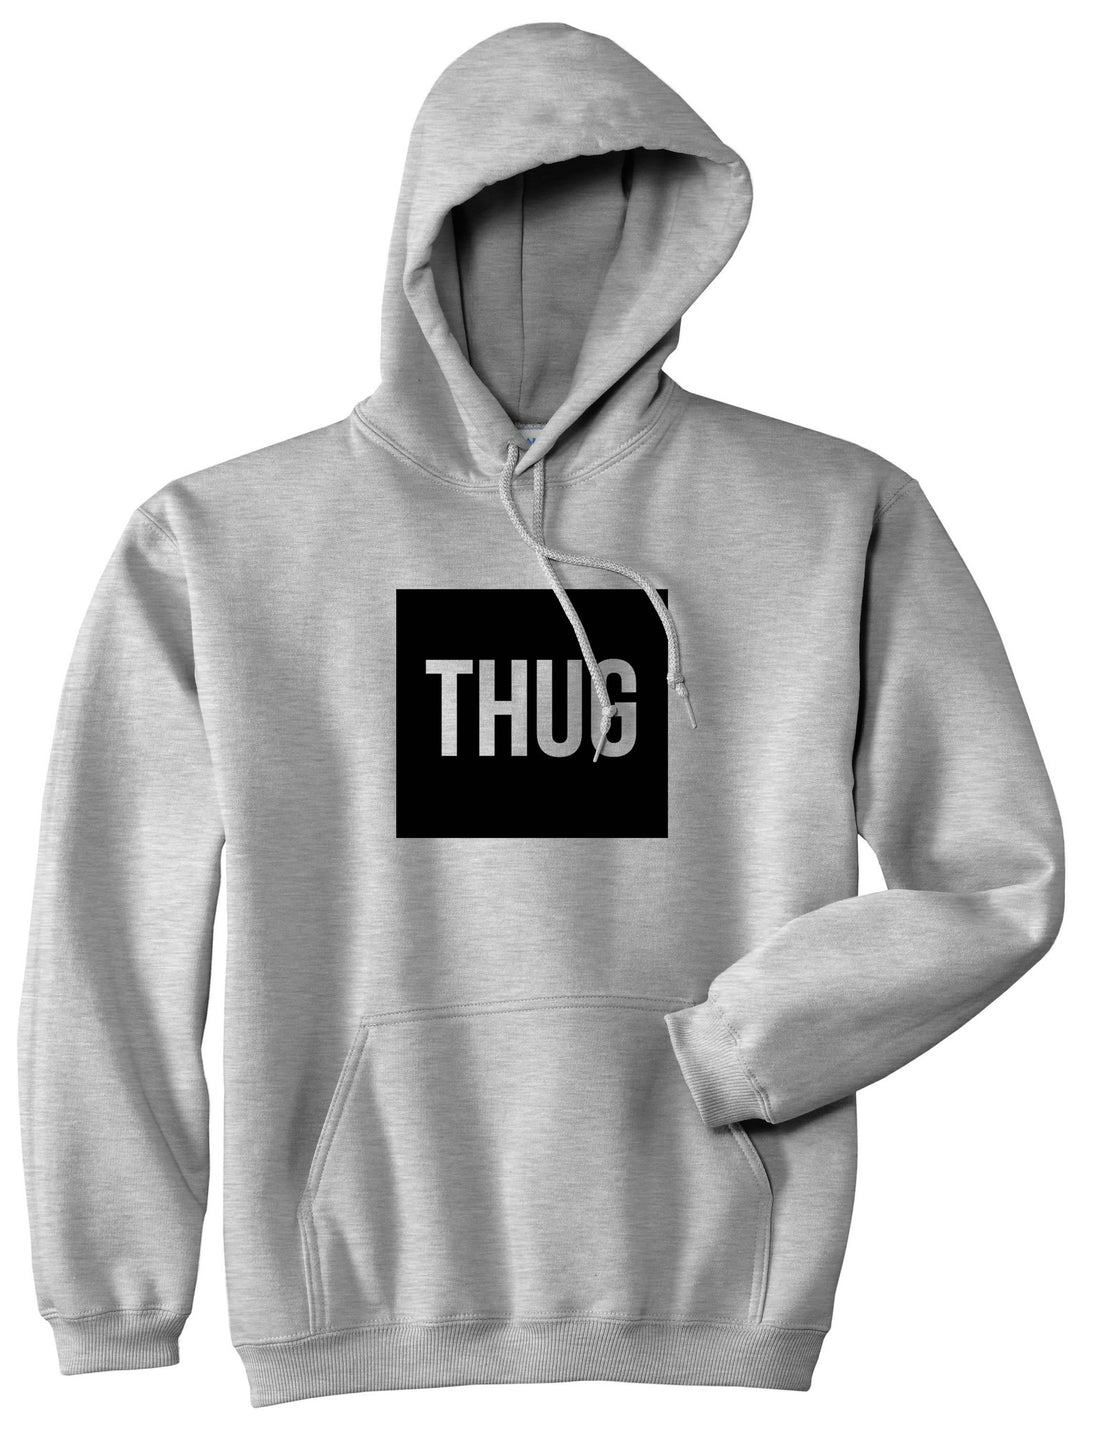 Thug Gangsta Box Logo Pullover Hoodie Hoody in Grey by Kings Of NY